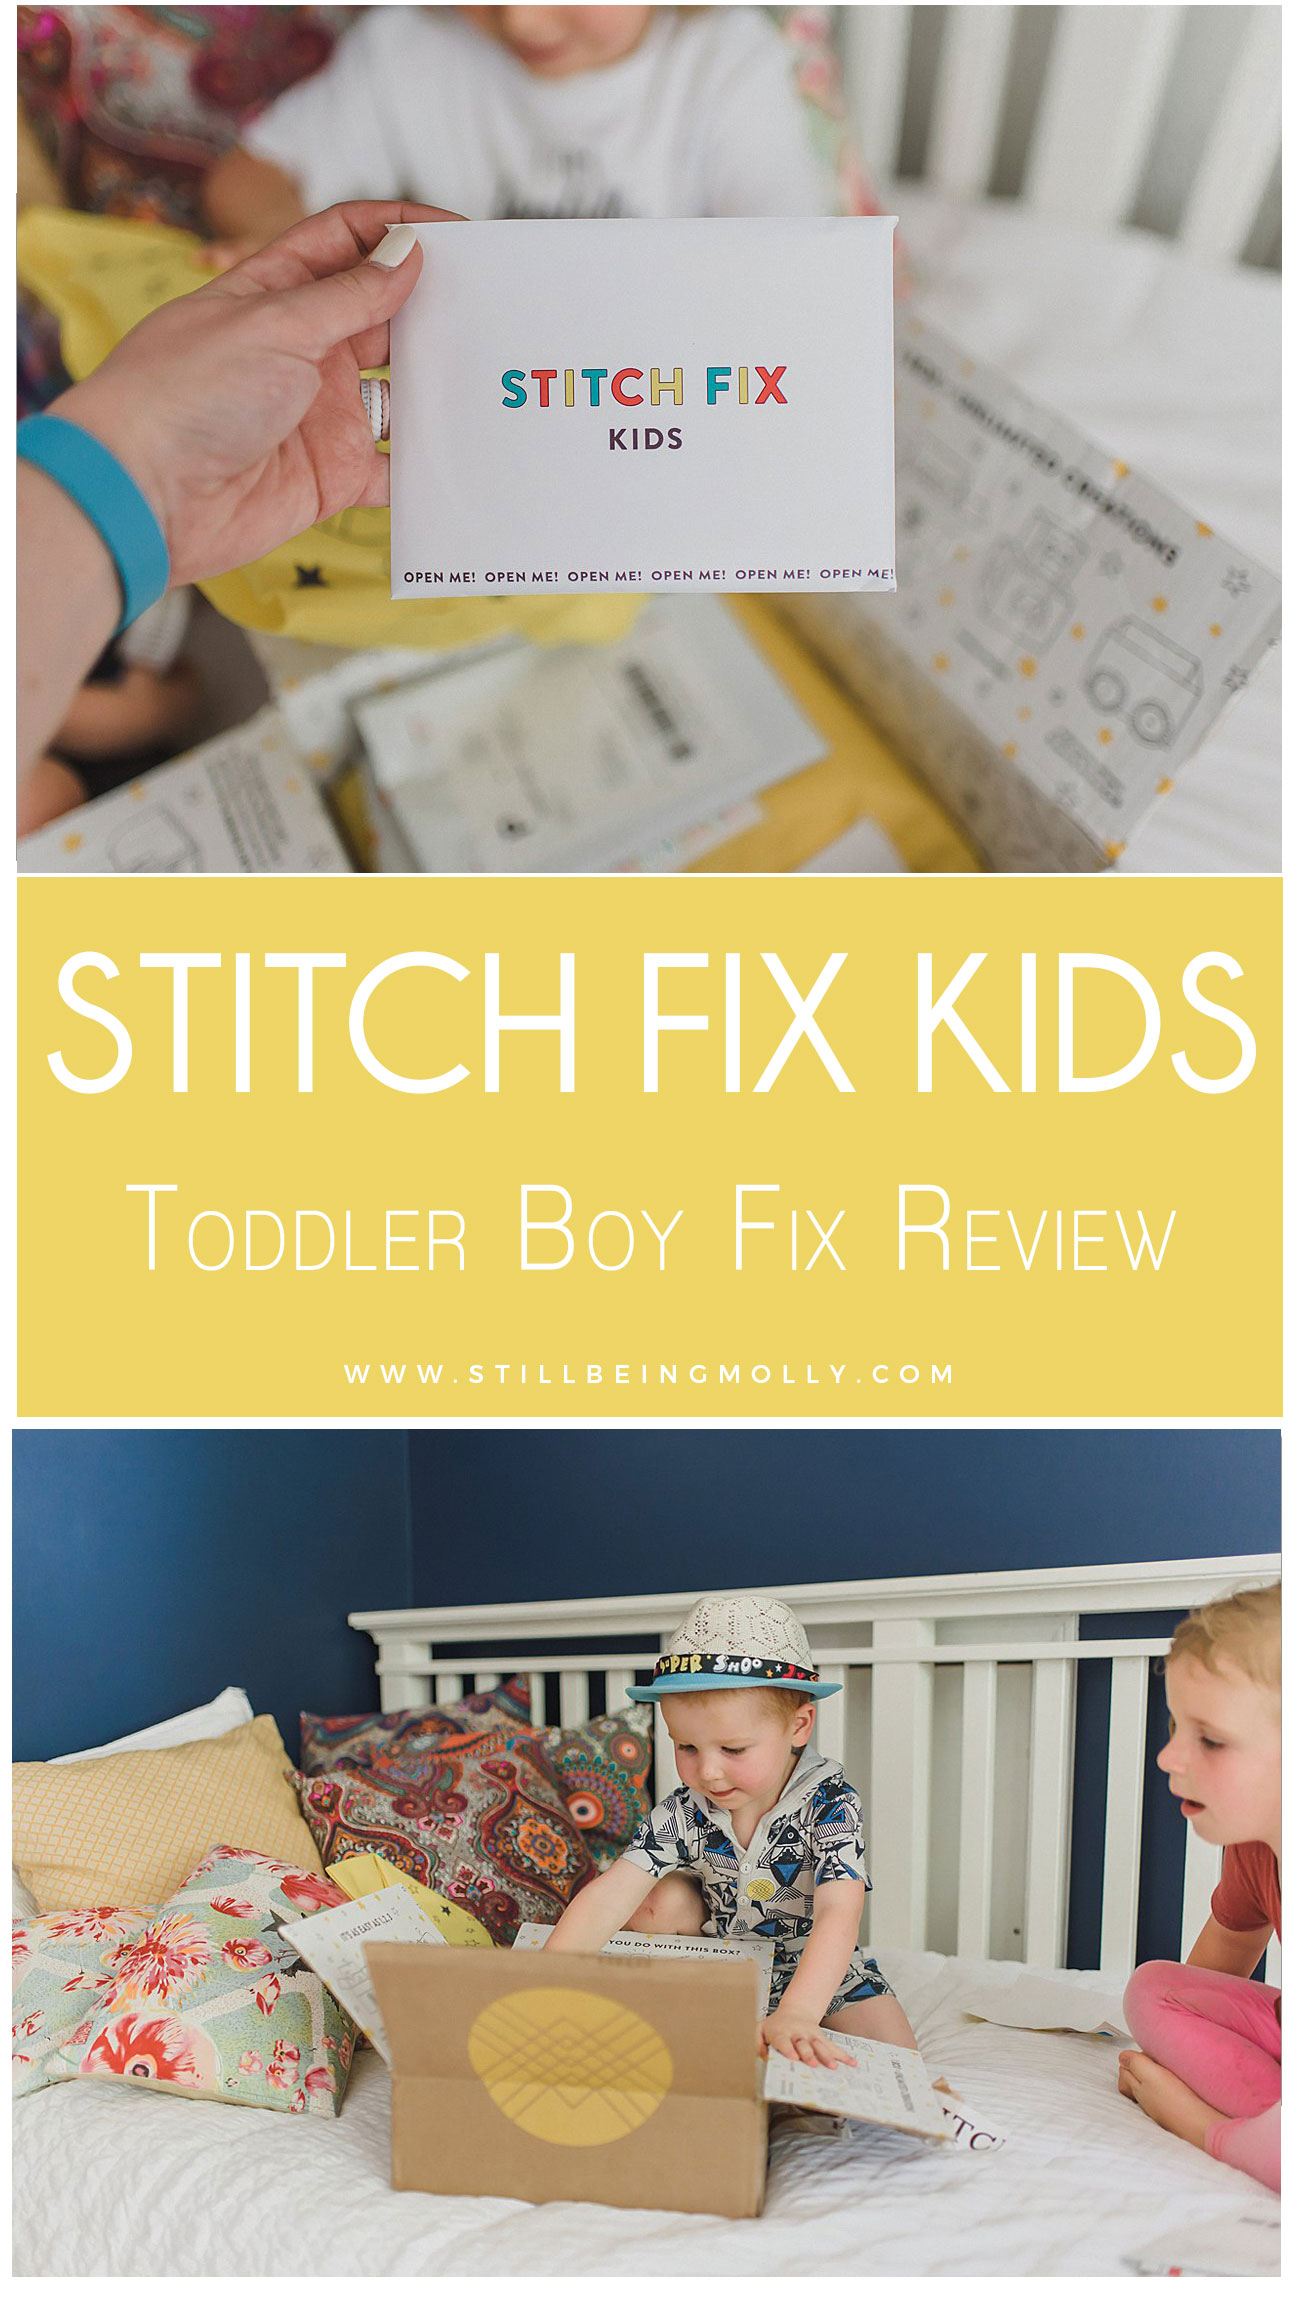 Stitch Fix Kids - Toddler Boy's Fix Review - Amos's First Fix (16)